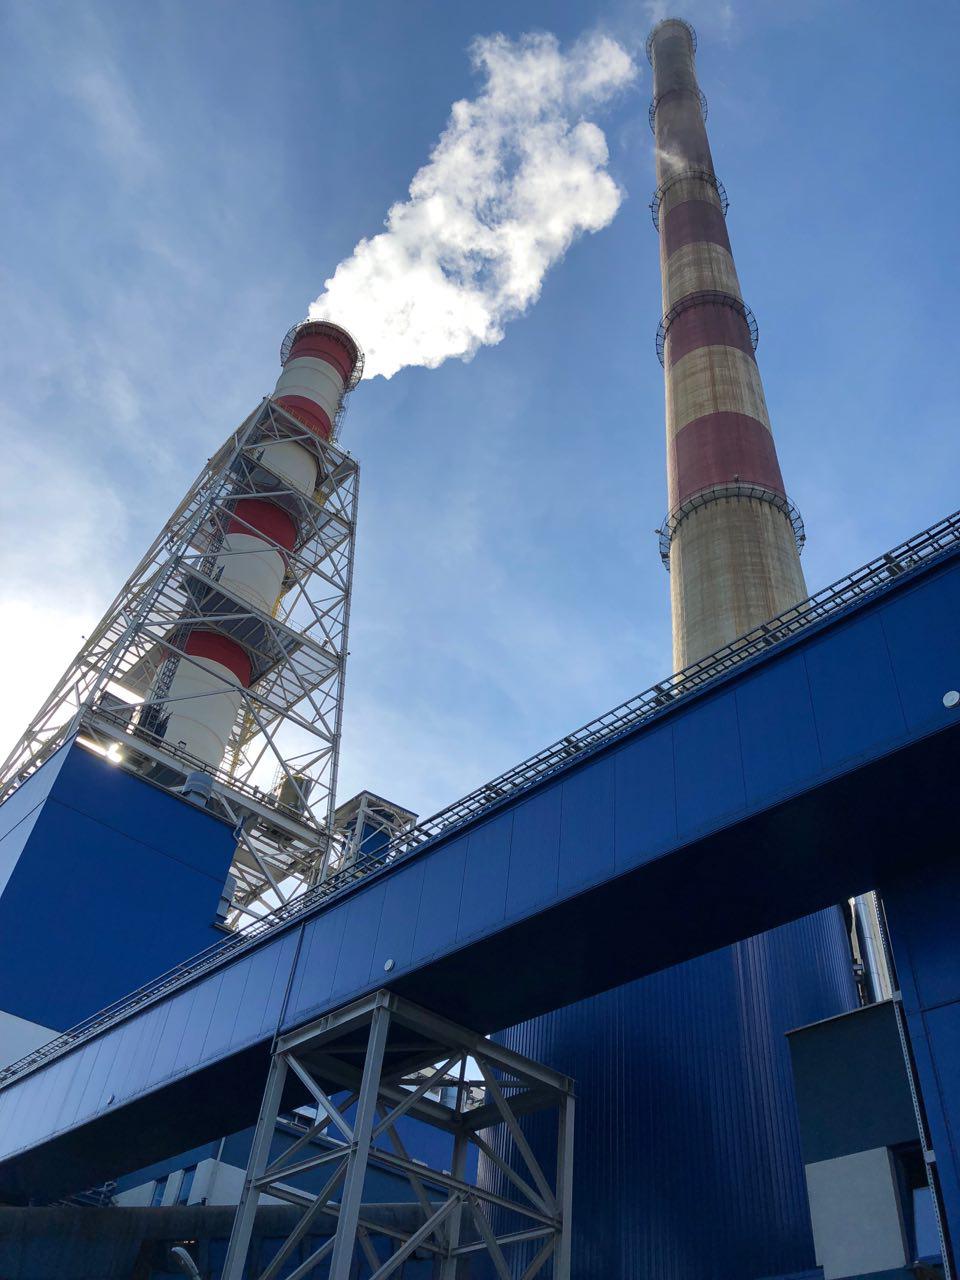 Nowy komin instalacji mokrego odsiarczania spalin (IMOS) jest znacznie mniejszy od starych kominów elektrociepłowni. Elektrociepłownia Kraków. Fot. BiznesAlert.pl